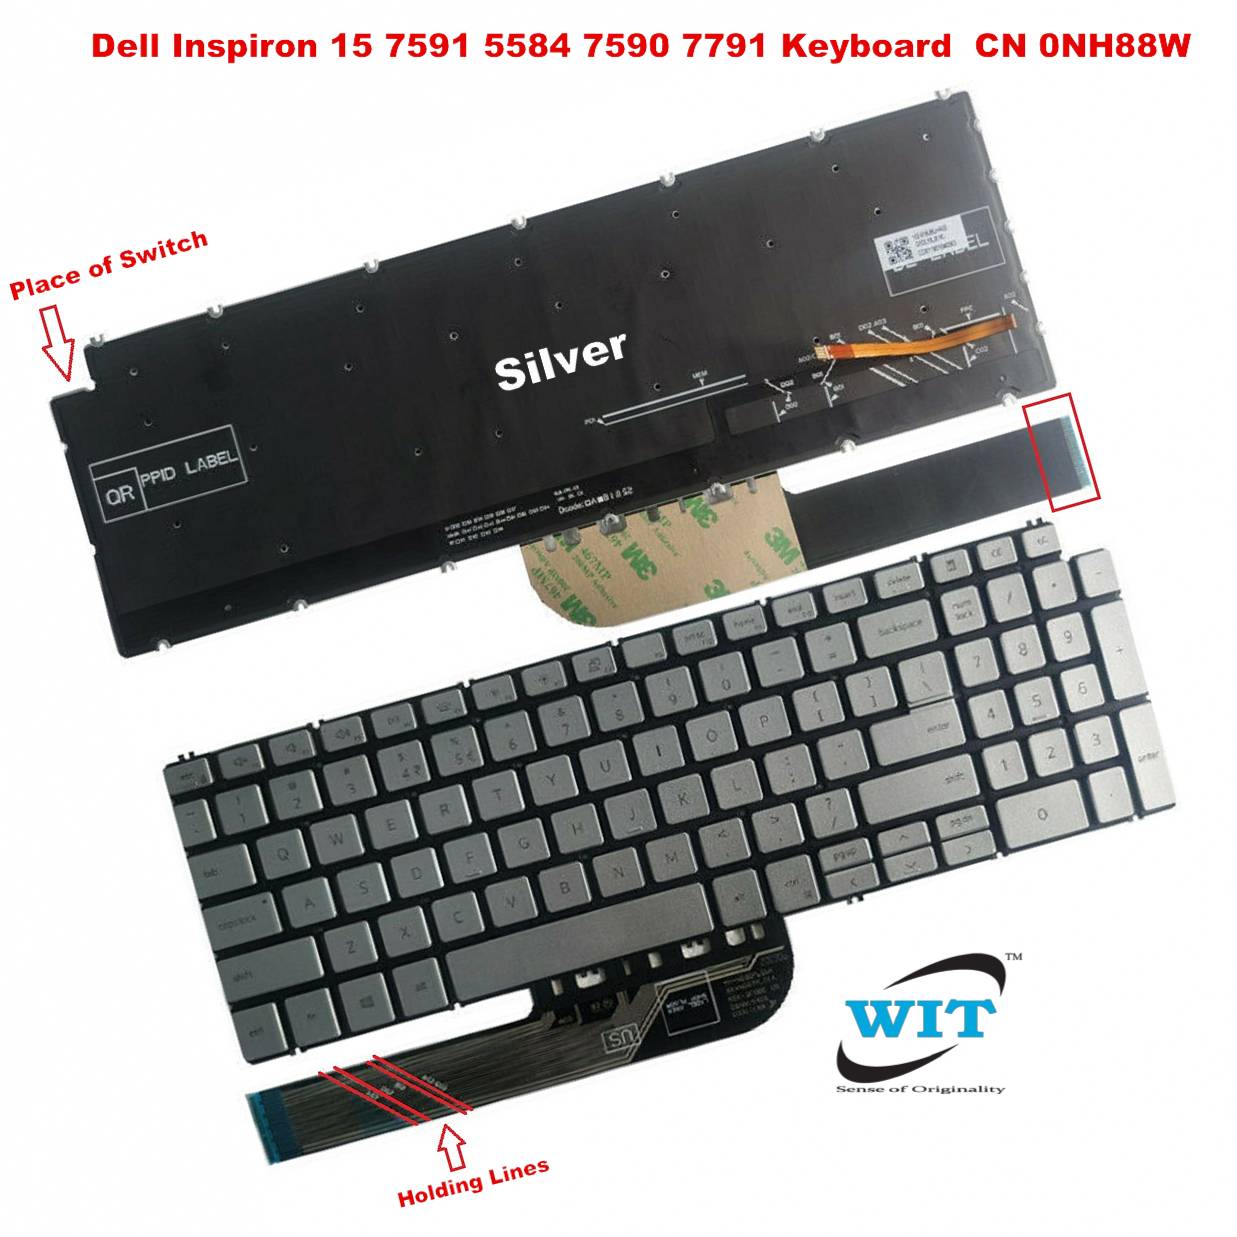 Keyboard for Dell lnspiron 5000 15-7591 7590 5590 5584 7790 7791 5594 5598  5593 P42E P88F P90F CN 0NH88W, Dell Inspiron 15-3501 3502 3505 5501 5502  5508 5584 5590 5591 5593 5594 5598 series Dell Inspiron 15-7500 7501 7590  7591 series Dell latitude 3510 ...